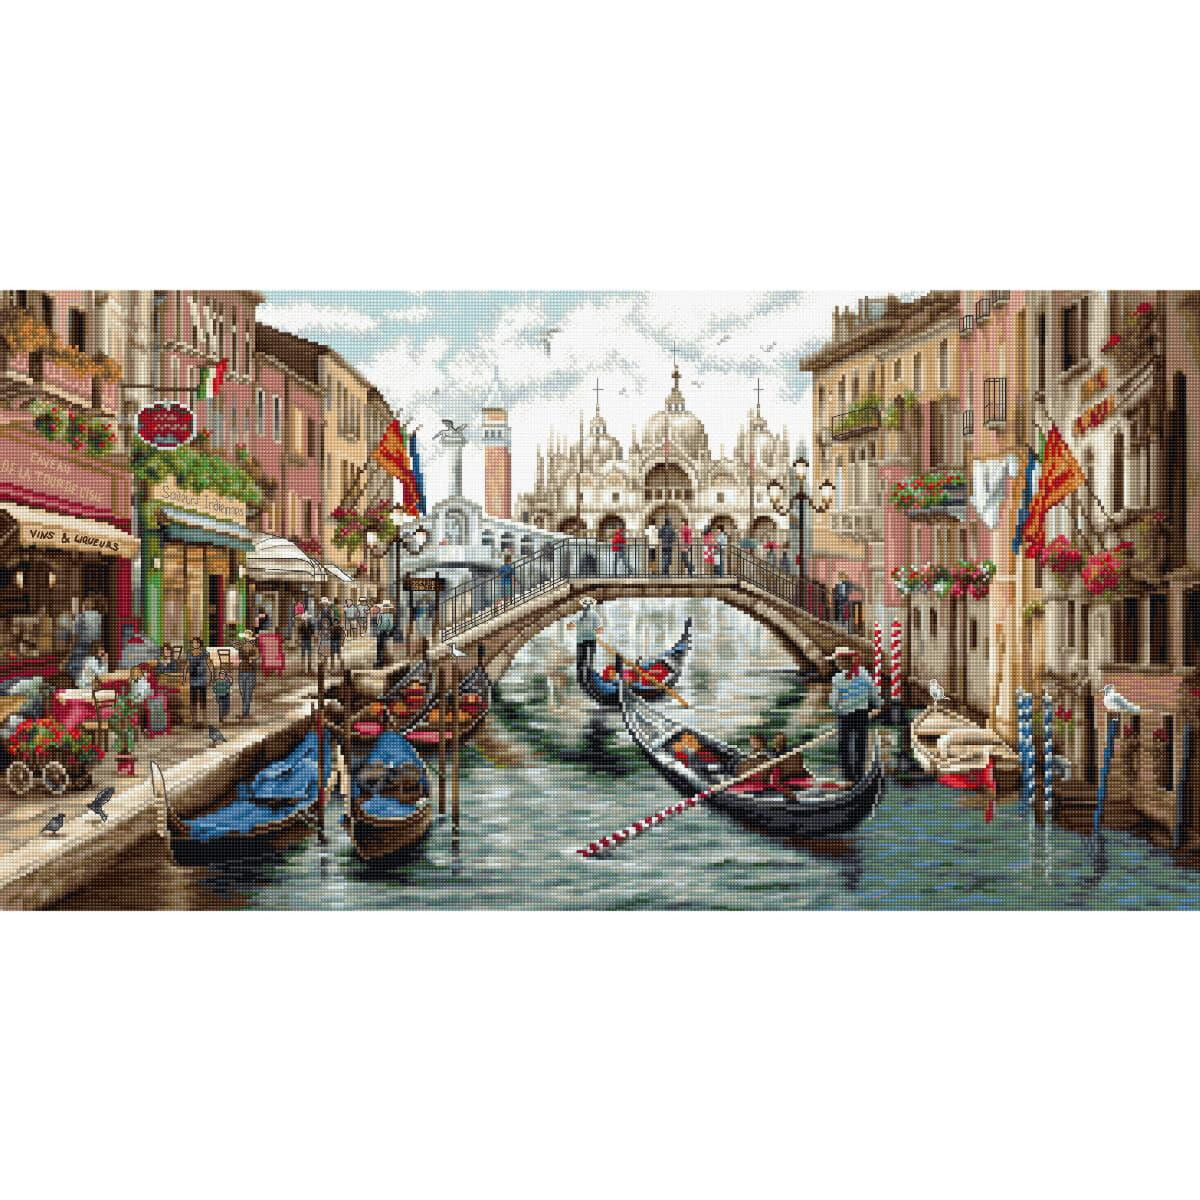 Una ajetreada escena en un canal de Venecia muestra...